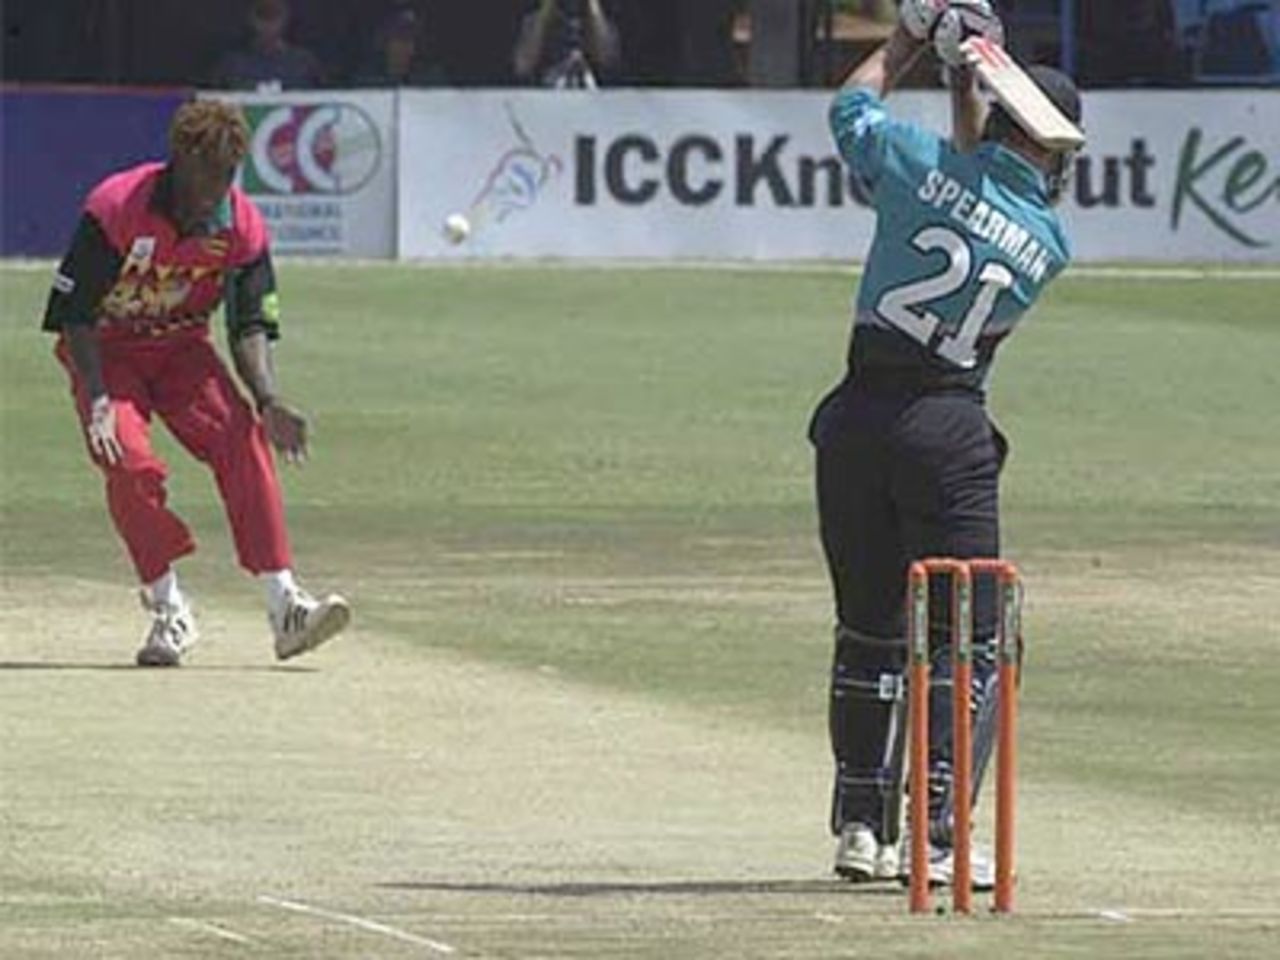 Craig Spearman drives Olonga uppishly to the bowler's left, ICC KnockOut, 2000/01, 3rd Quarter Final, New Zealand v Zimbabwe, Gymkhana Club Ground, Nairobi, 09 October 2000.